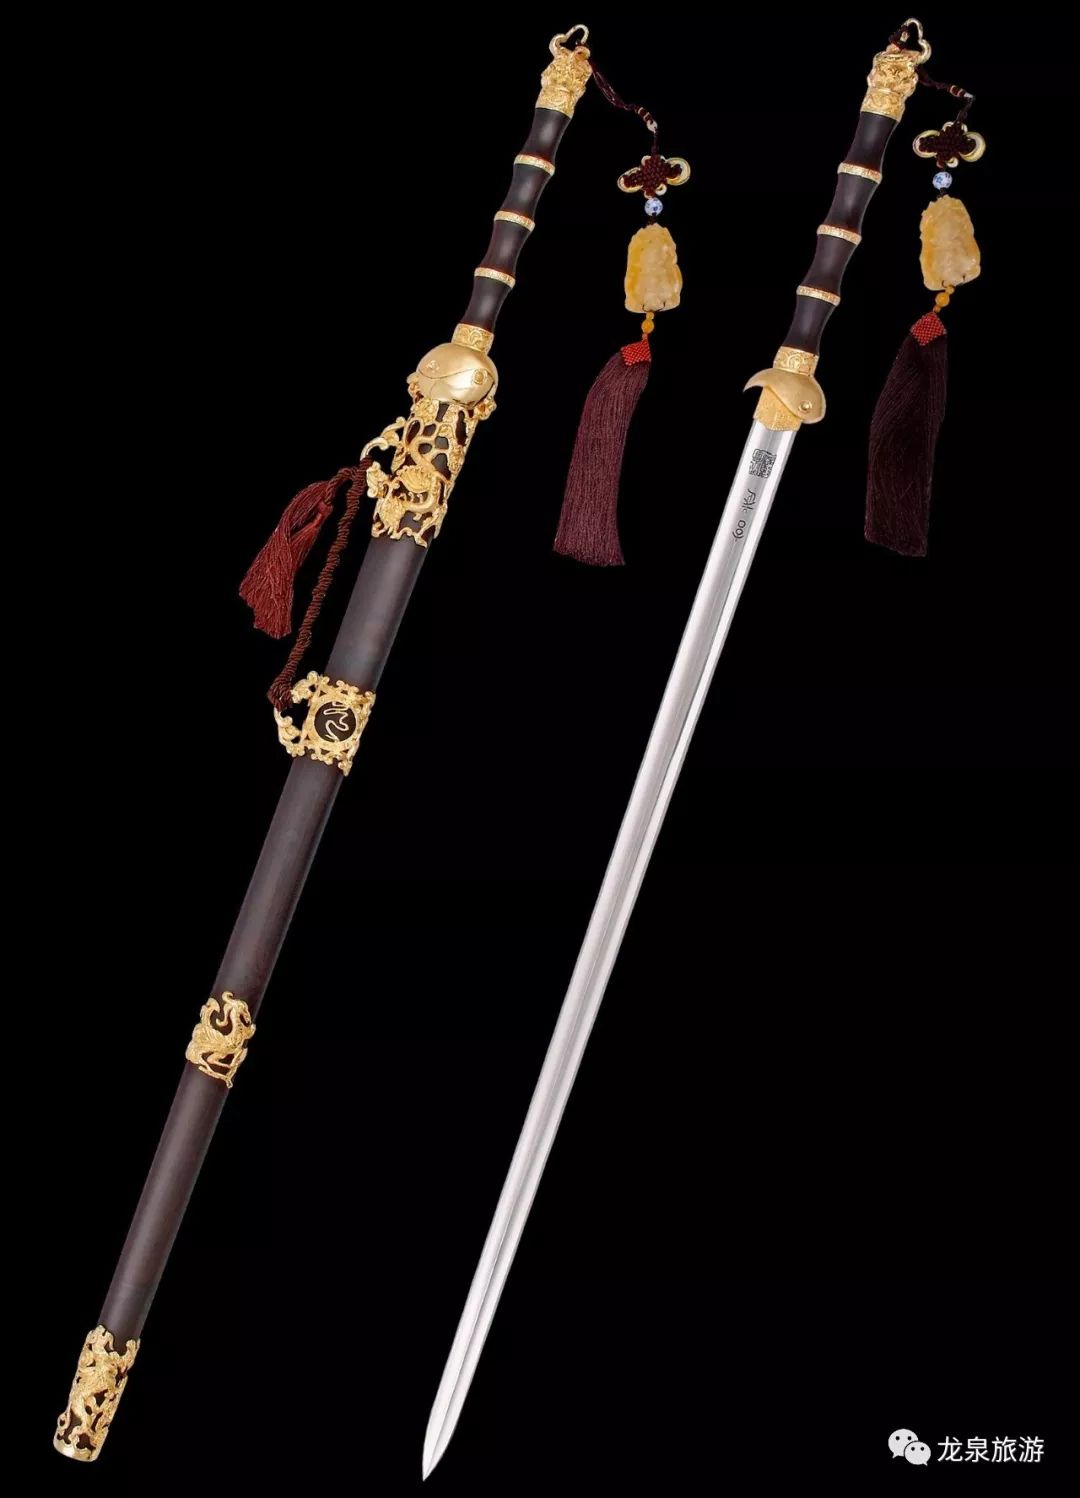 龙泉宝剑是中国金属冶炼和中国古代文明辉煌篇章